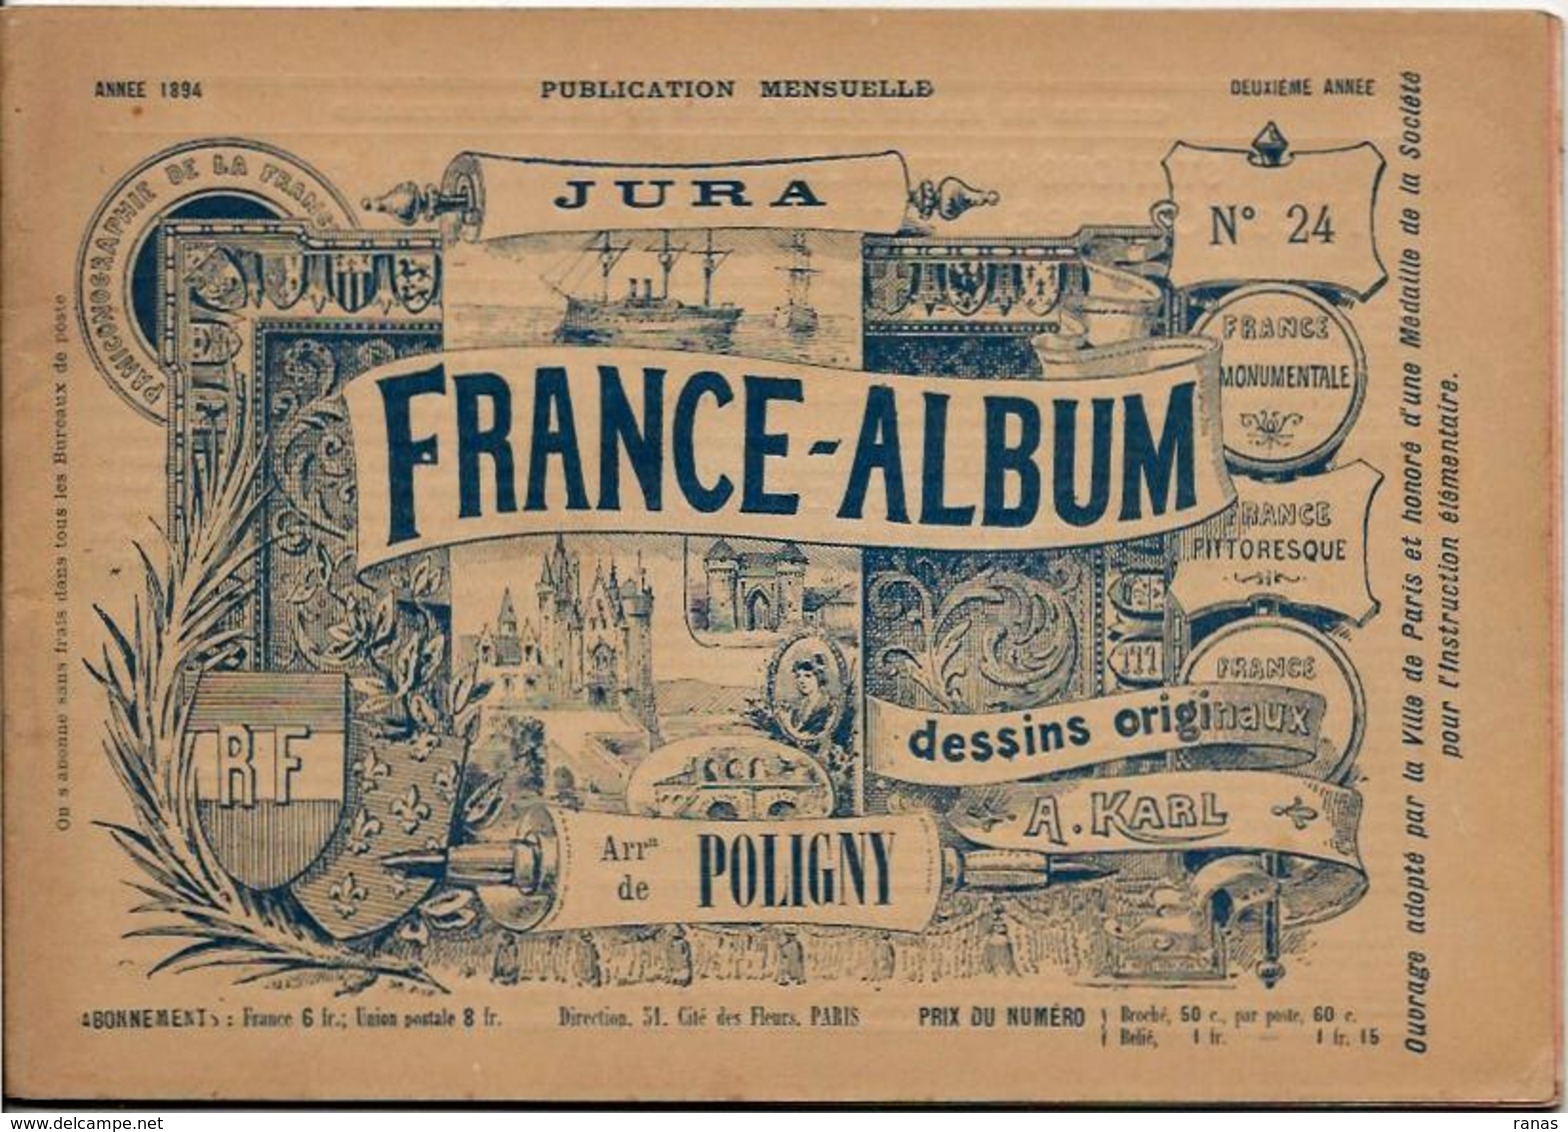 JURA 39 France Album De A. KARL, Carte Gravures Texte Publicités 1894 - Dépliants Touristiques